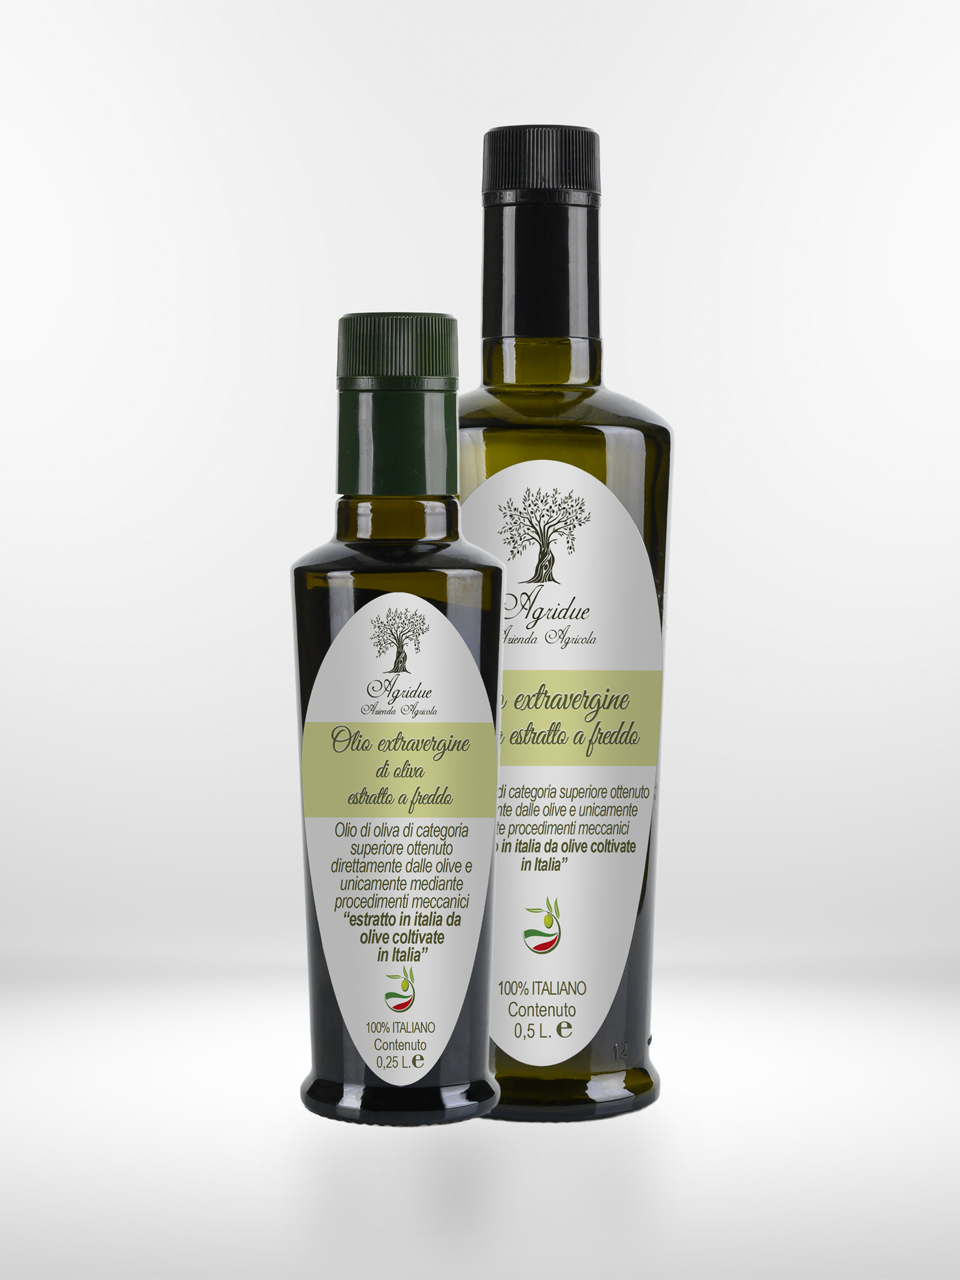 Due bottiglie di olio d'oliva su sfondo bianco. Olio multivarietale agridue, disponibile in diversi formati.